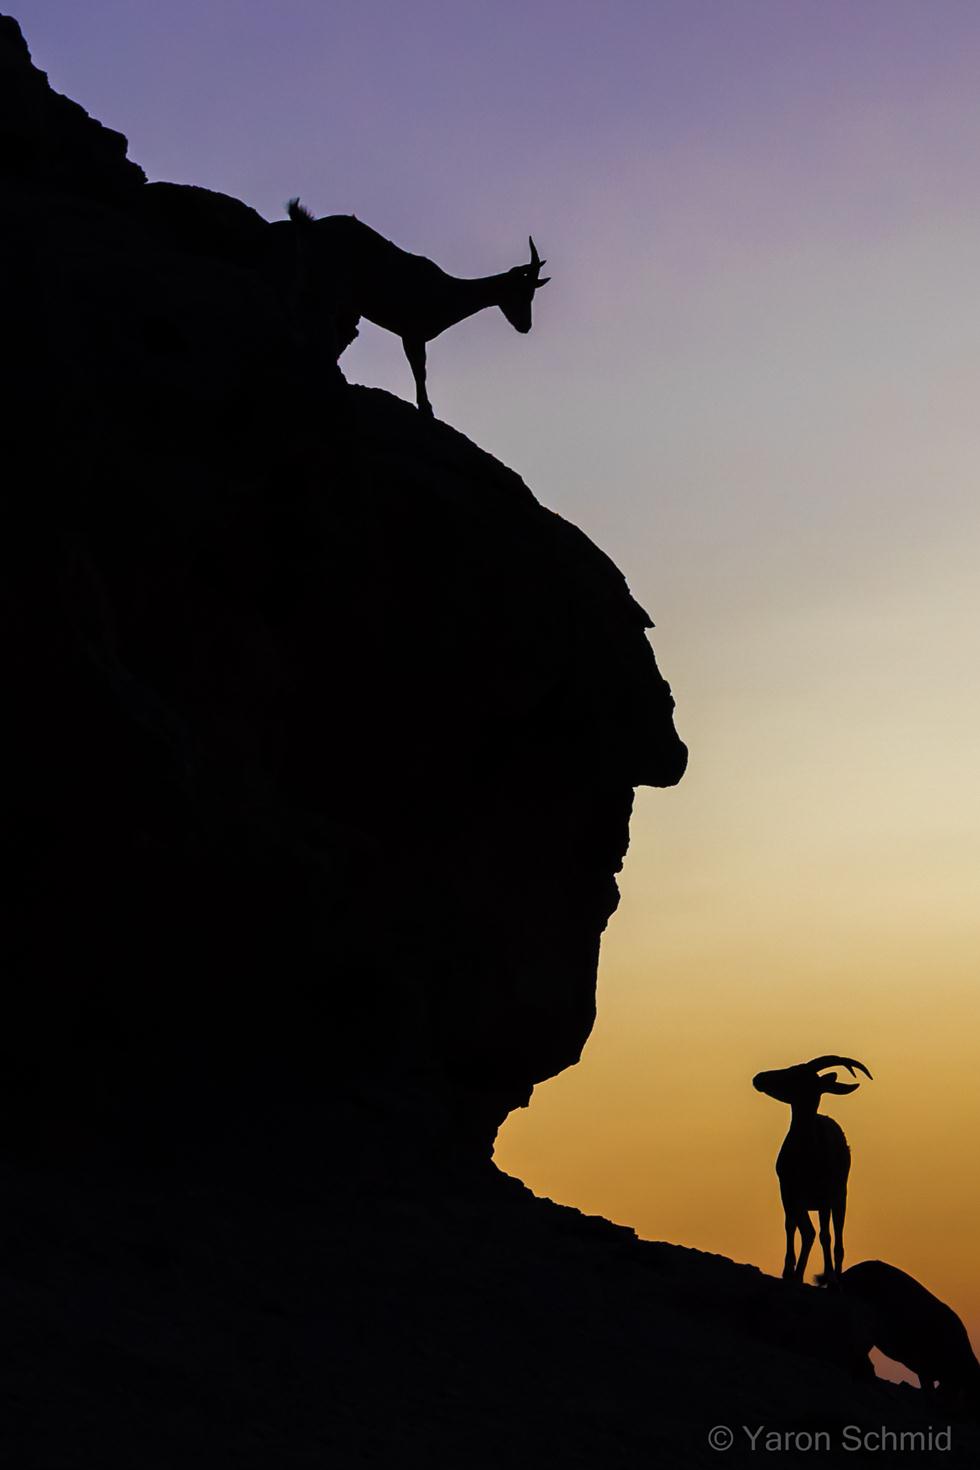 יעלים במצפה רמון (צילום: ירון שמיד | Yaron Schmid)